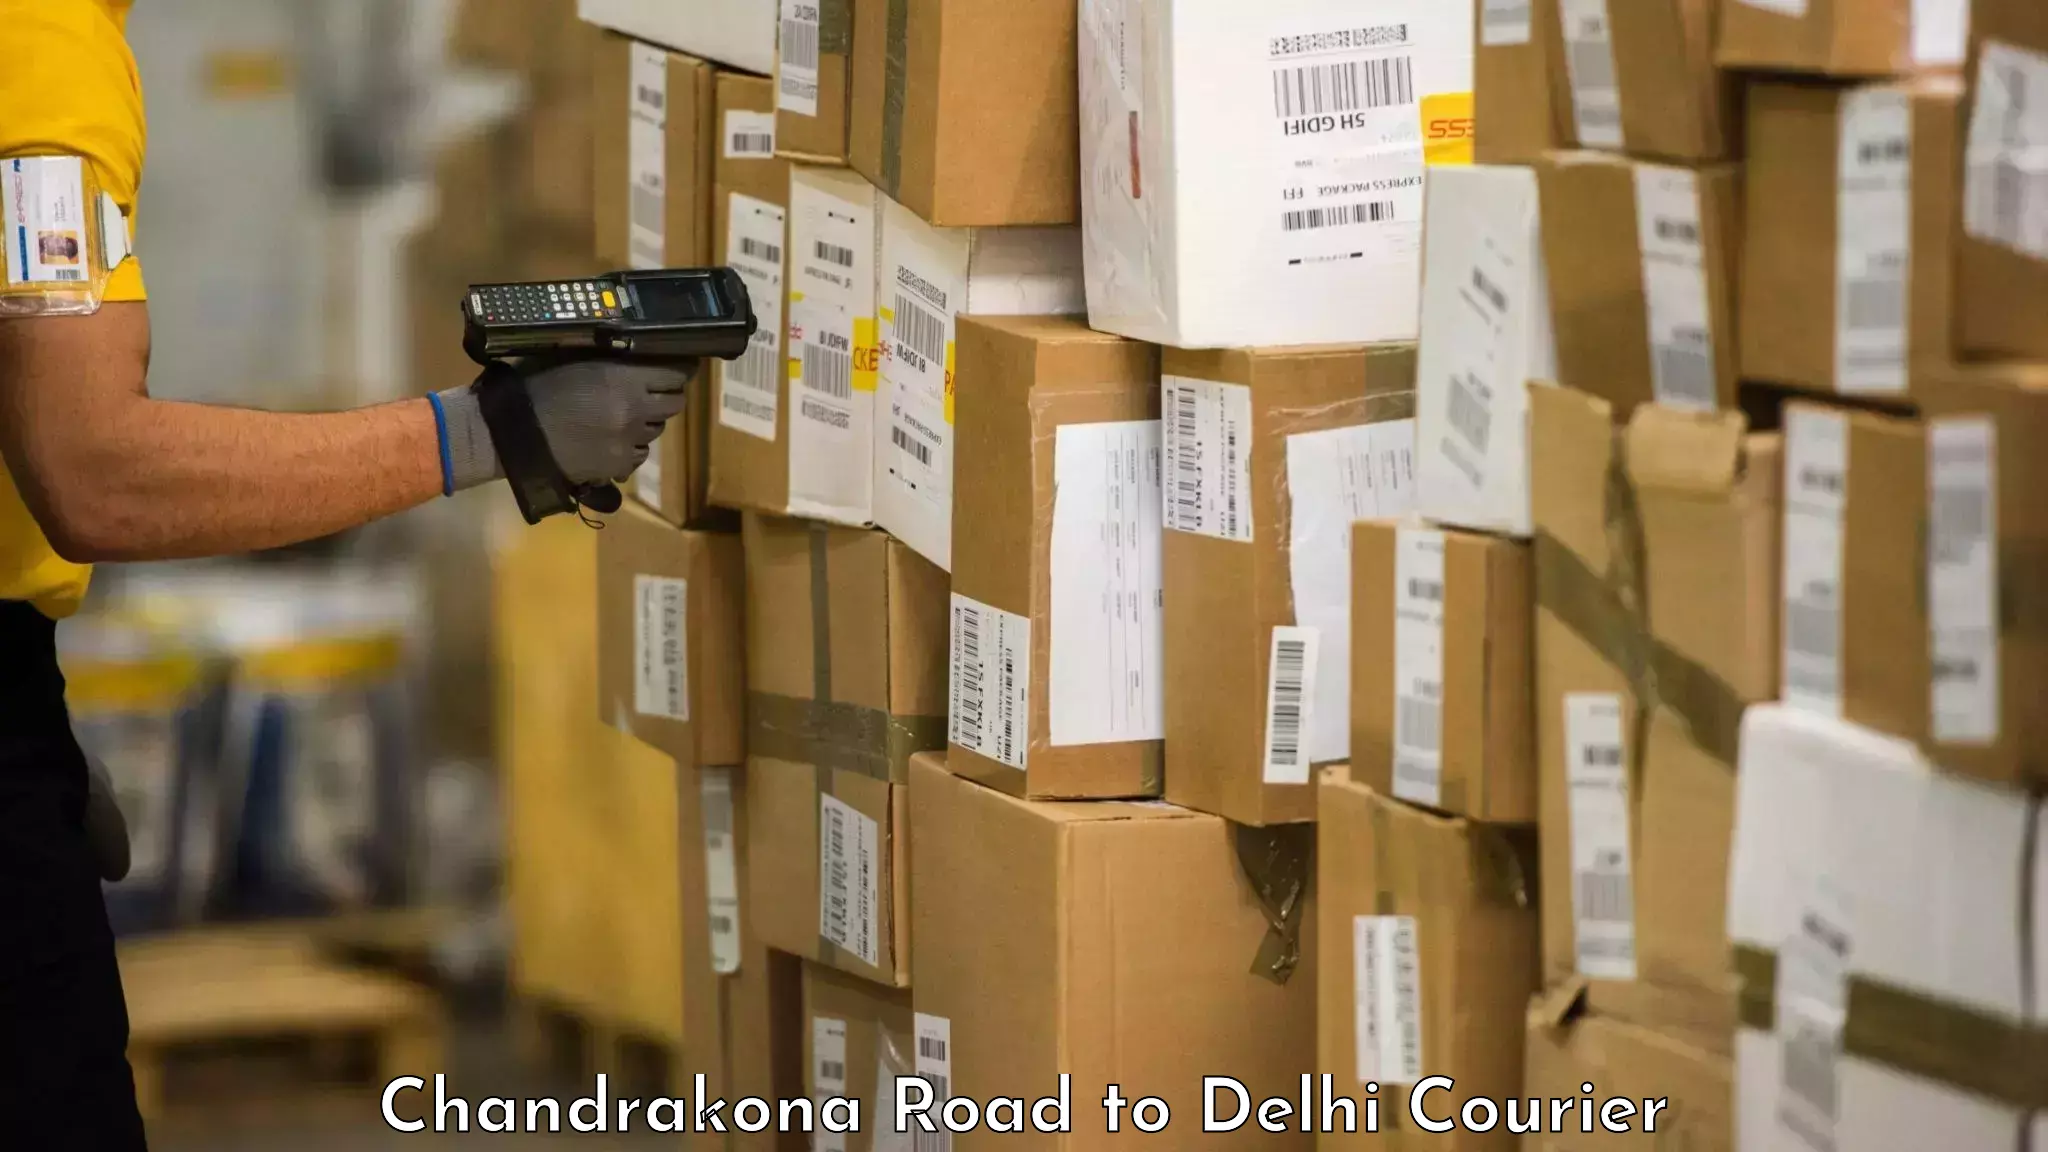 Door-to-door baggage service Chandrakona Road to Delhi